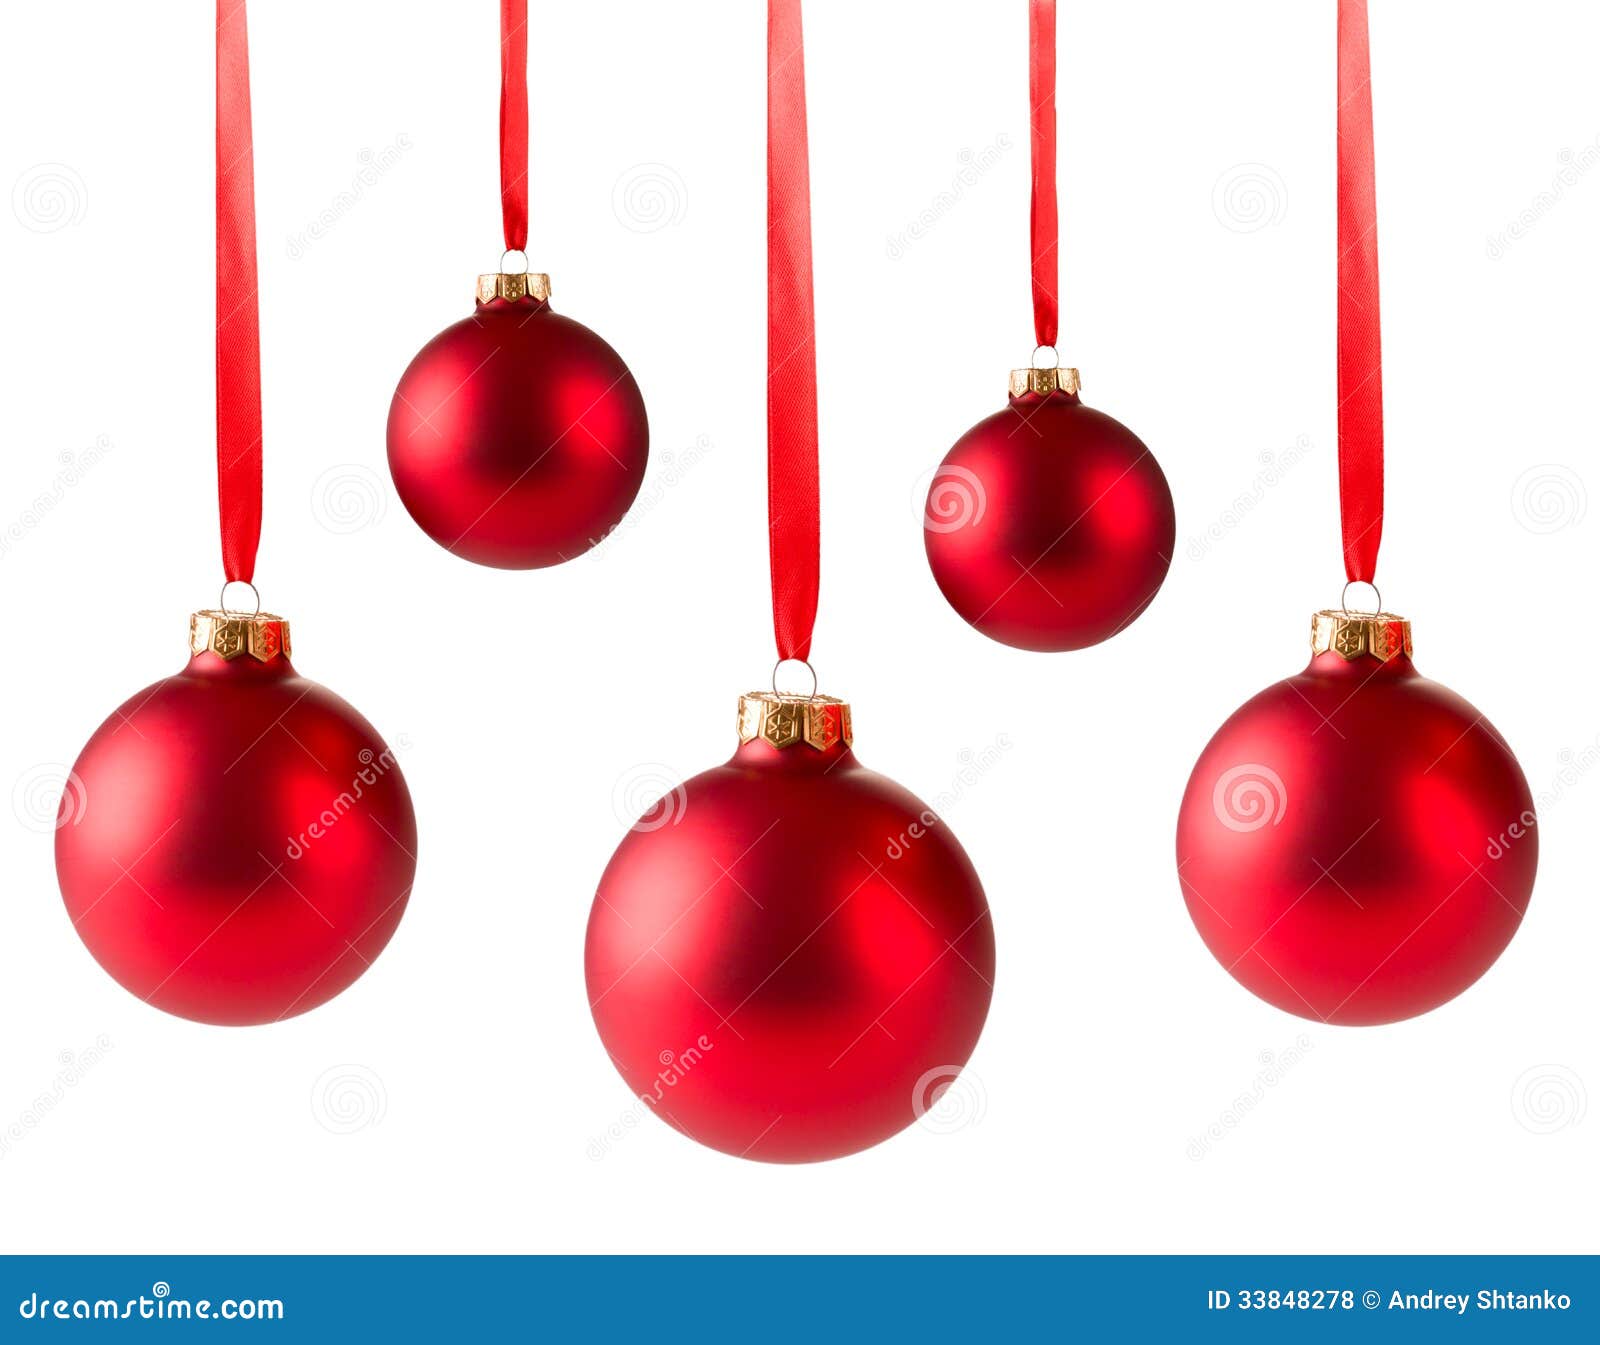 COOLWEST Lote de 24 Bolas de Navidad combinadas para Colgantes Navidad Adornos /árbol de Fiesta decoraci/ón de Navidad Azul